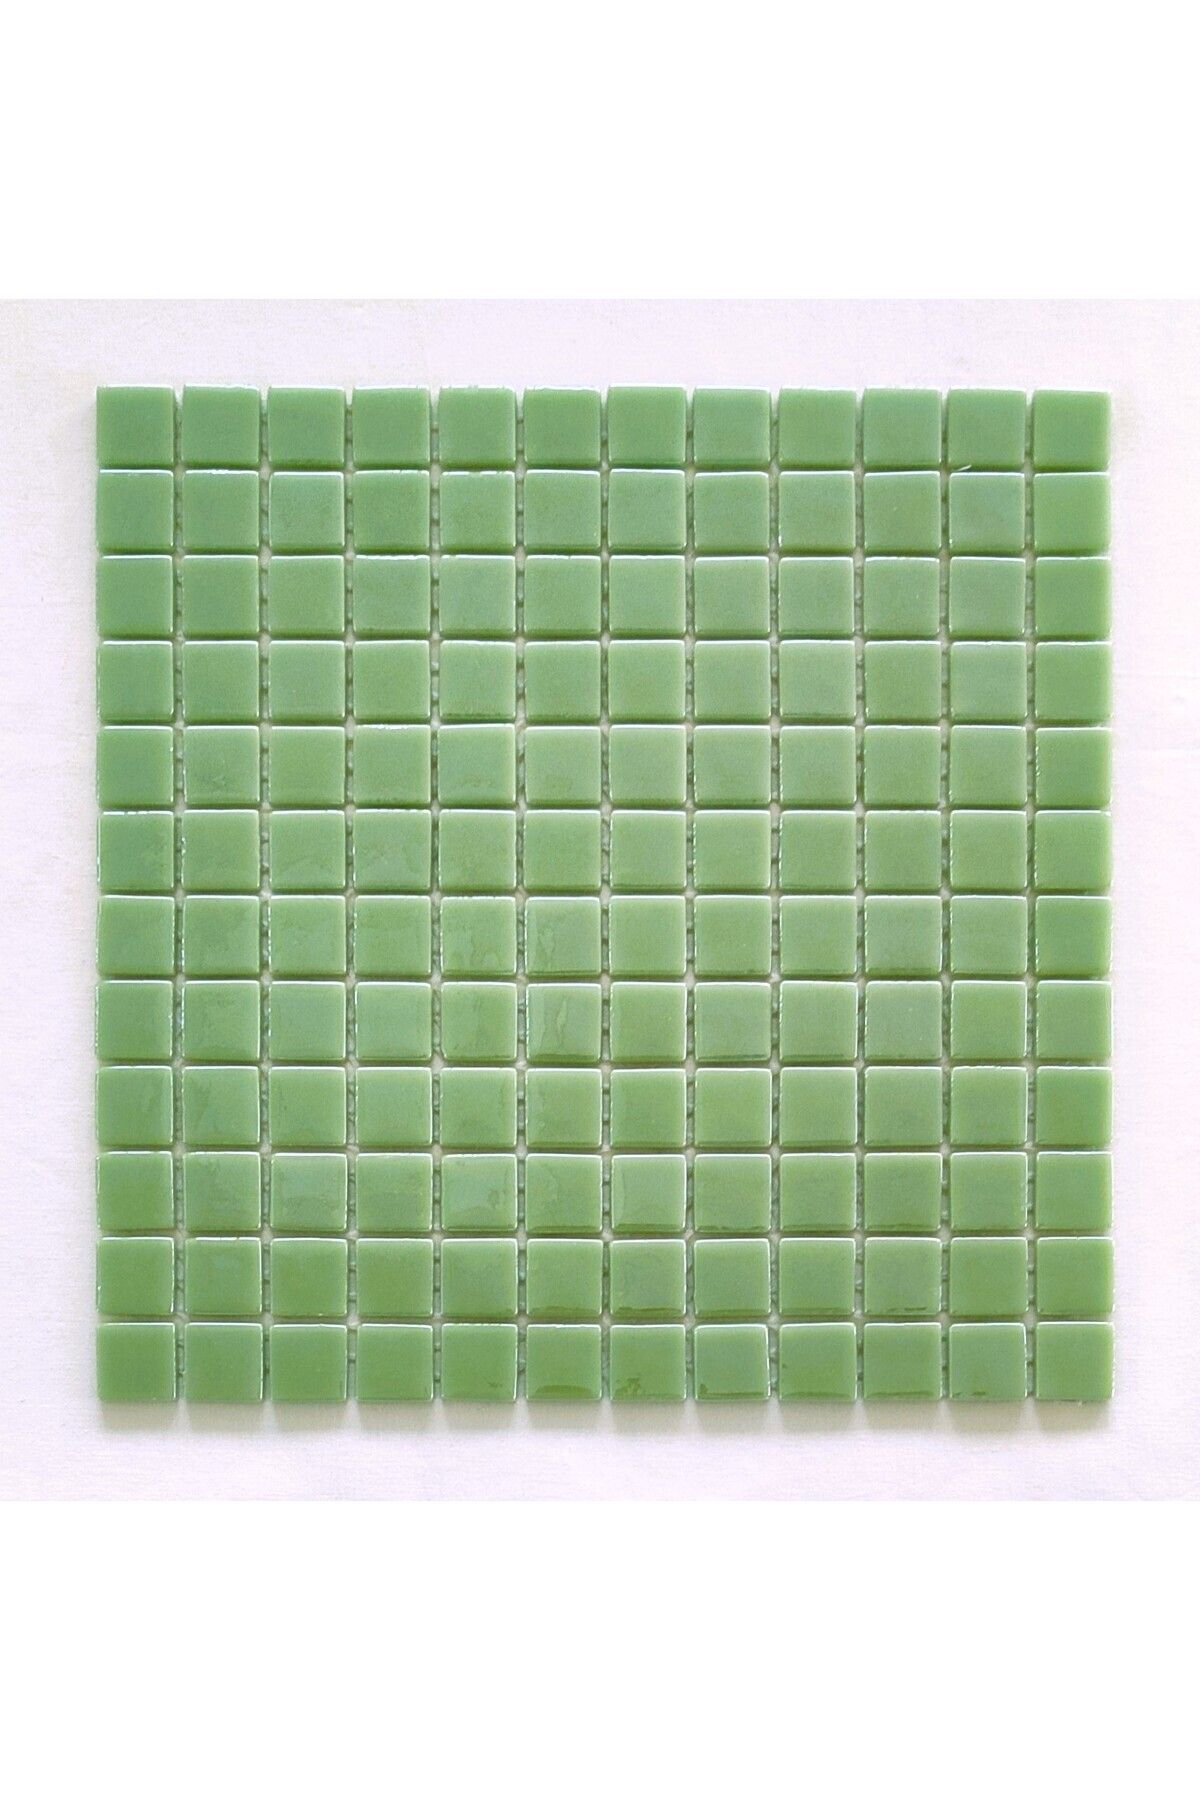 MozaiKristaL Yaşam alanlarının tüm yüzeyleri için Açık Yeşil Cam Mozaik. ( 1 Kutu = 1 m2 Fiyatıdır )